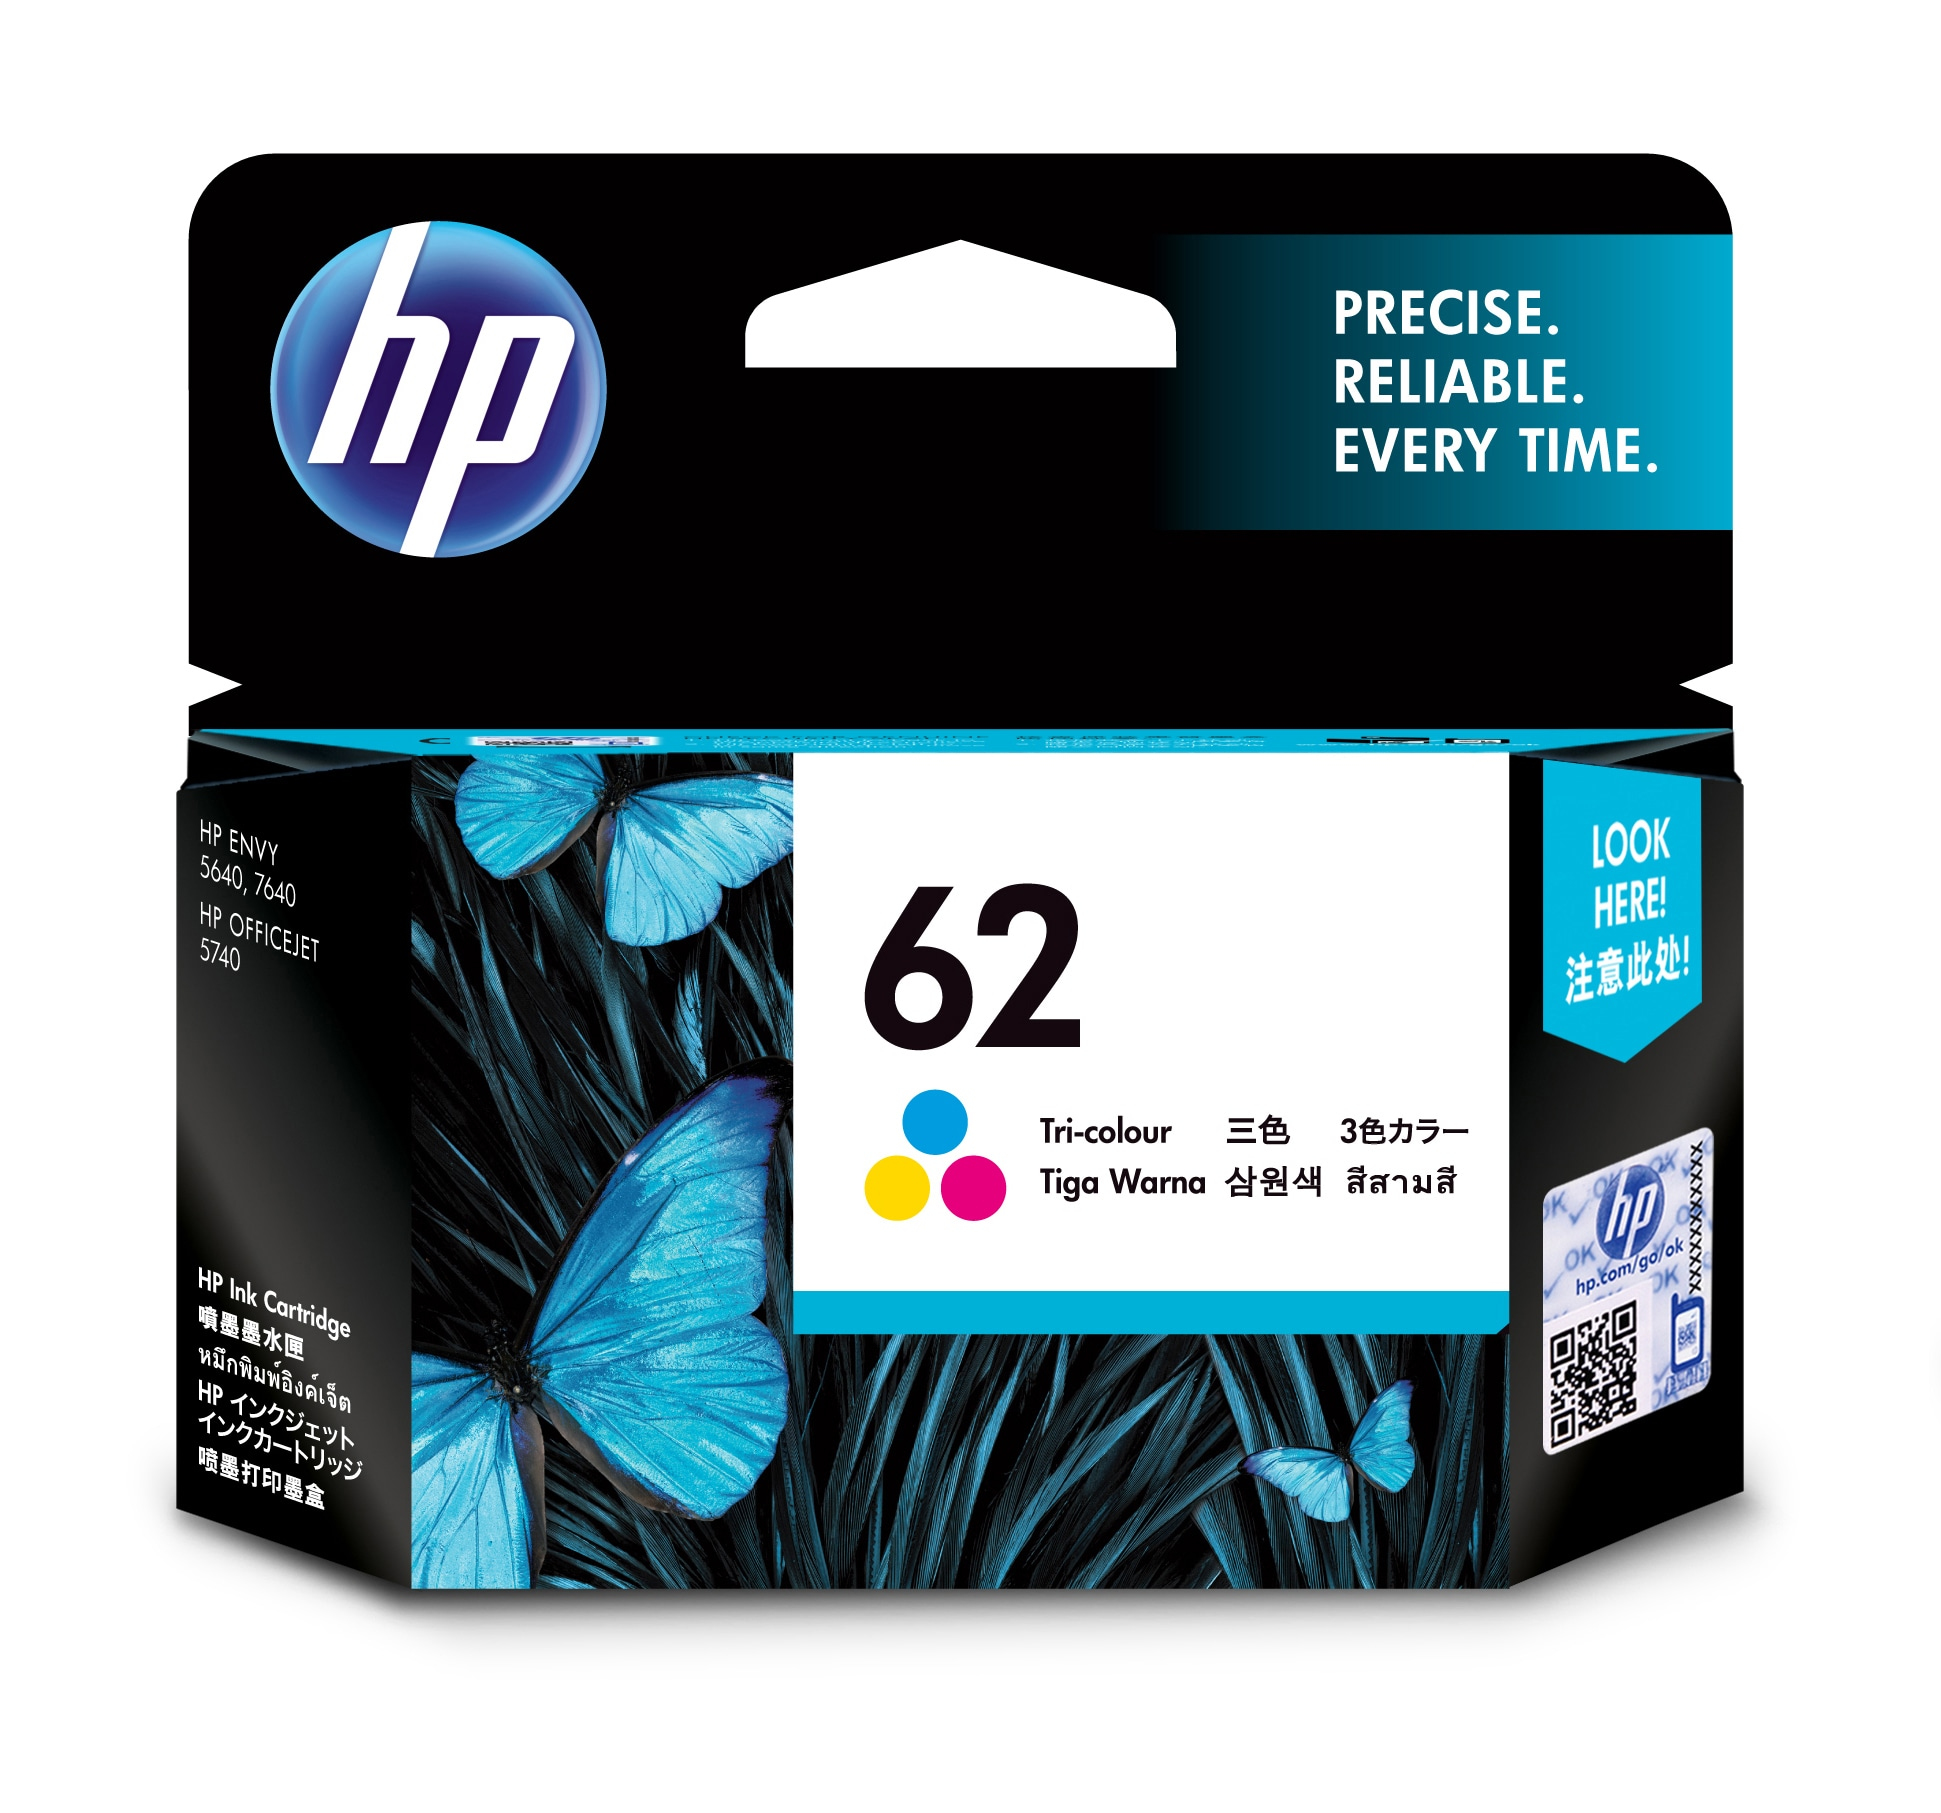 HP 62 cartouche d'encre trois couleurs authentique (HPC2P06AA